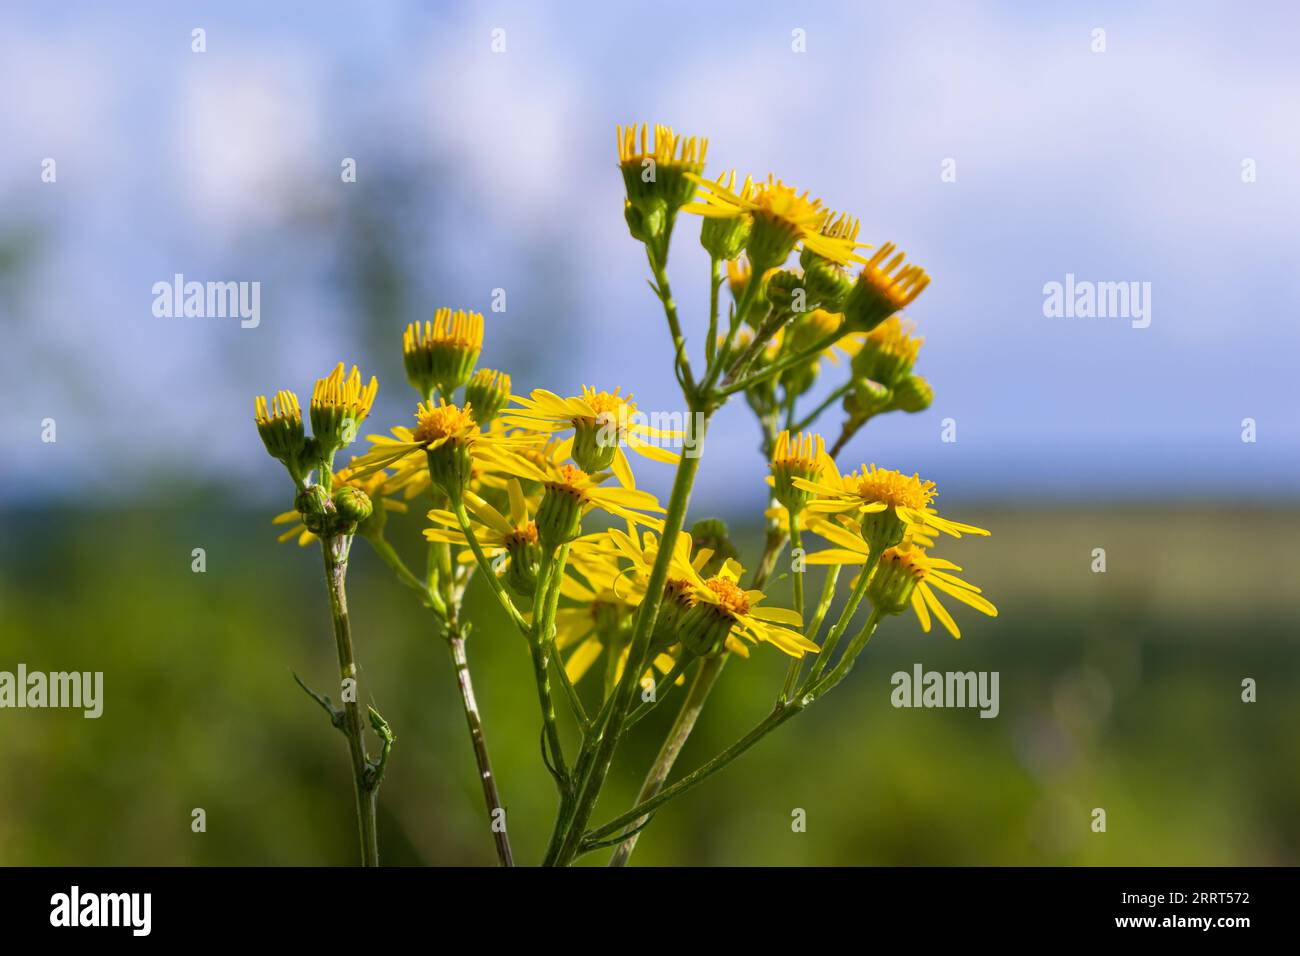 Nahaufnahme vieler Schmetterlinge auf einer gelben blühenden gewöhnlichen Ragwurz- oder Jacobaea vulgaris-Pflanze. Stockfoto